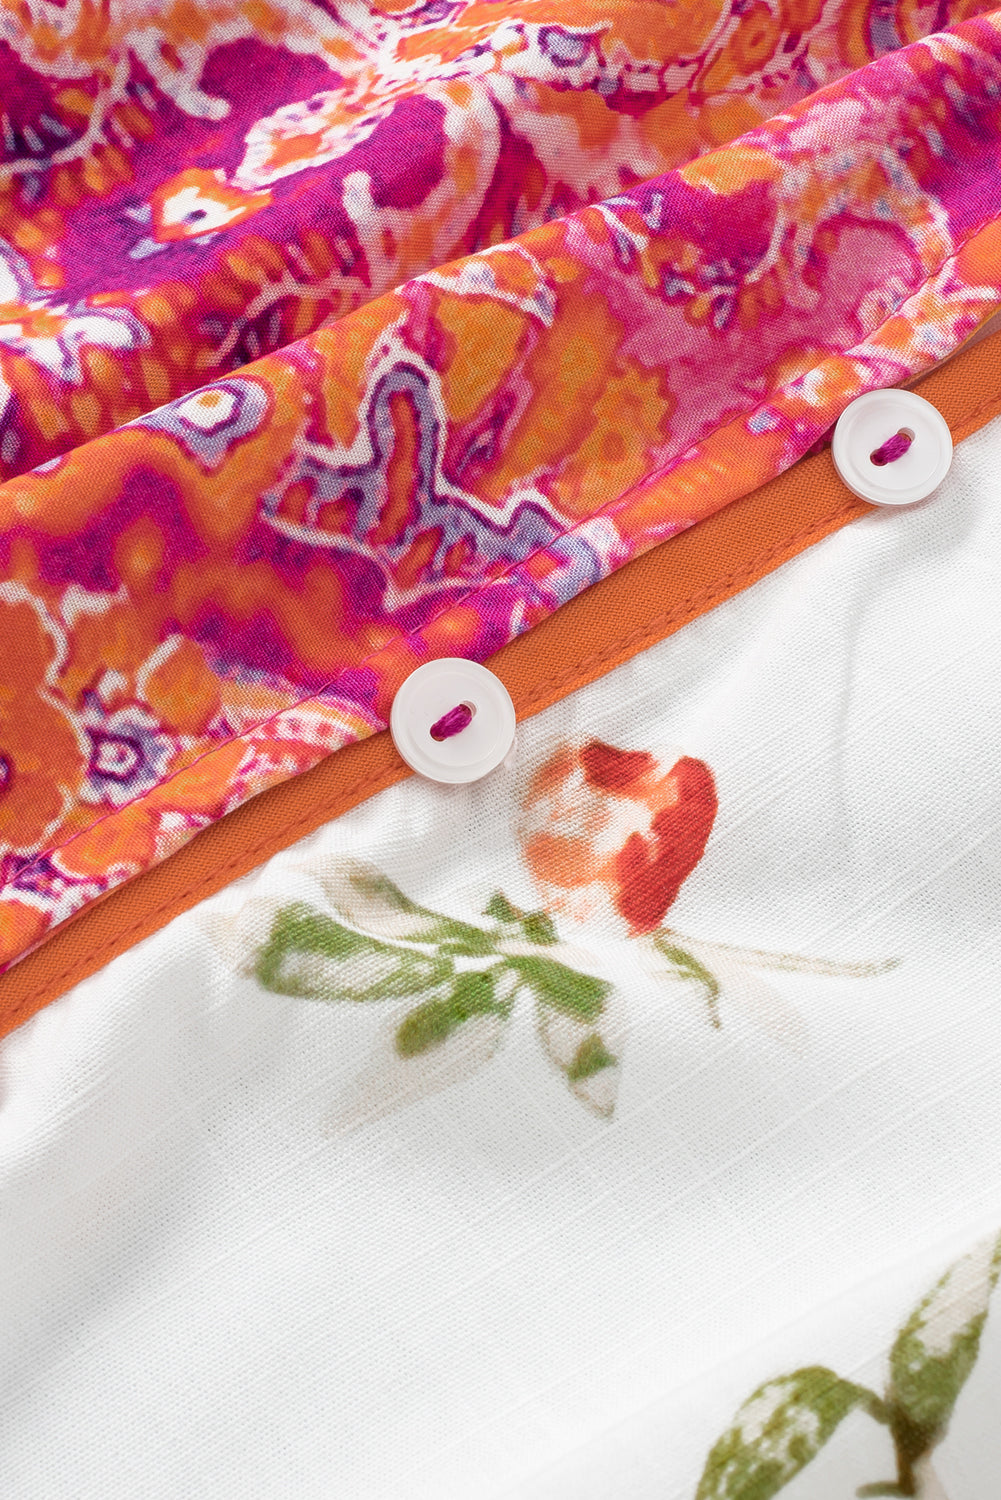 Rosafarbene, mehrfarbige, florale Patchwork-Bluse mit gerafften Manschetten und Knöpfen